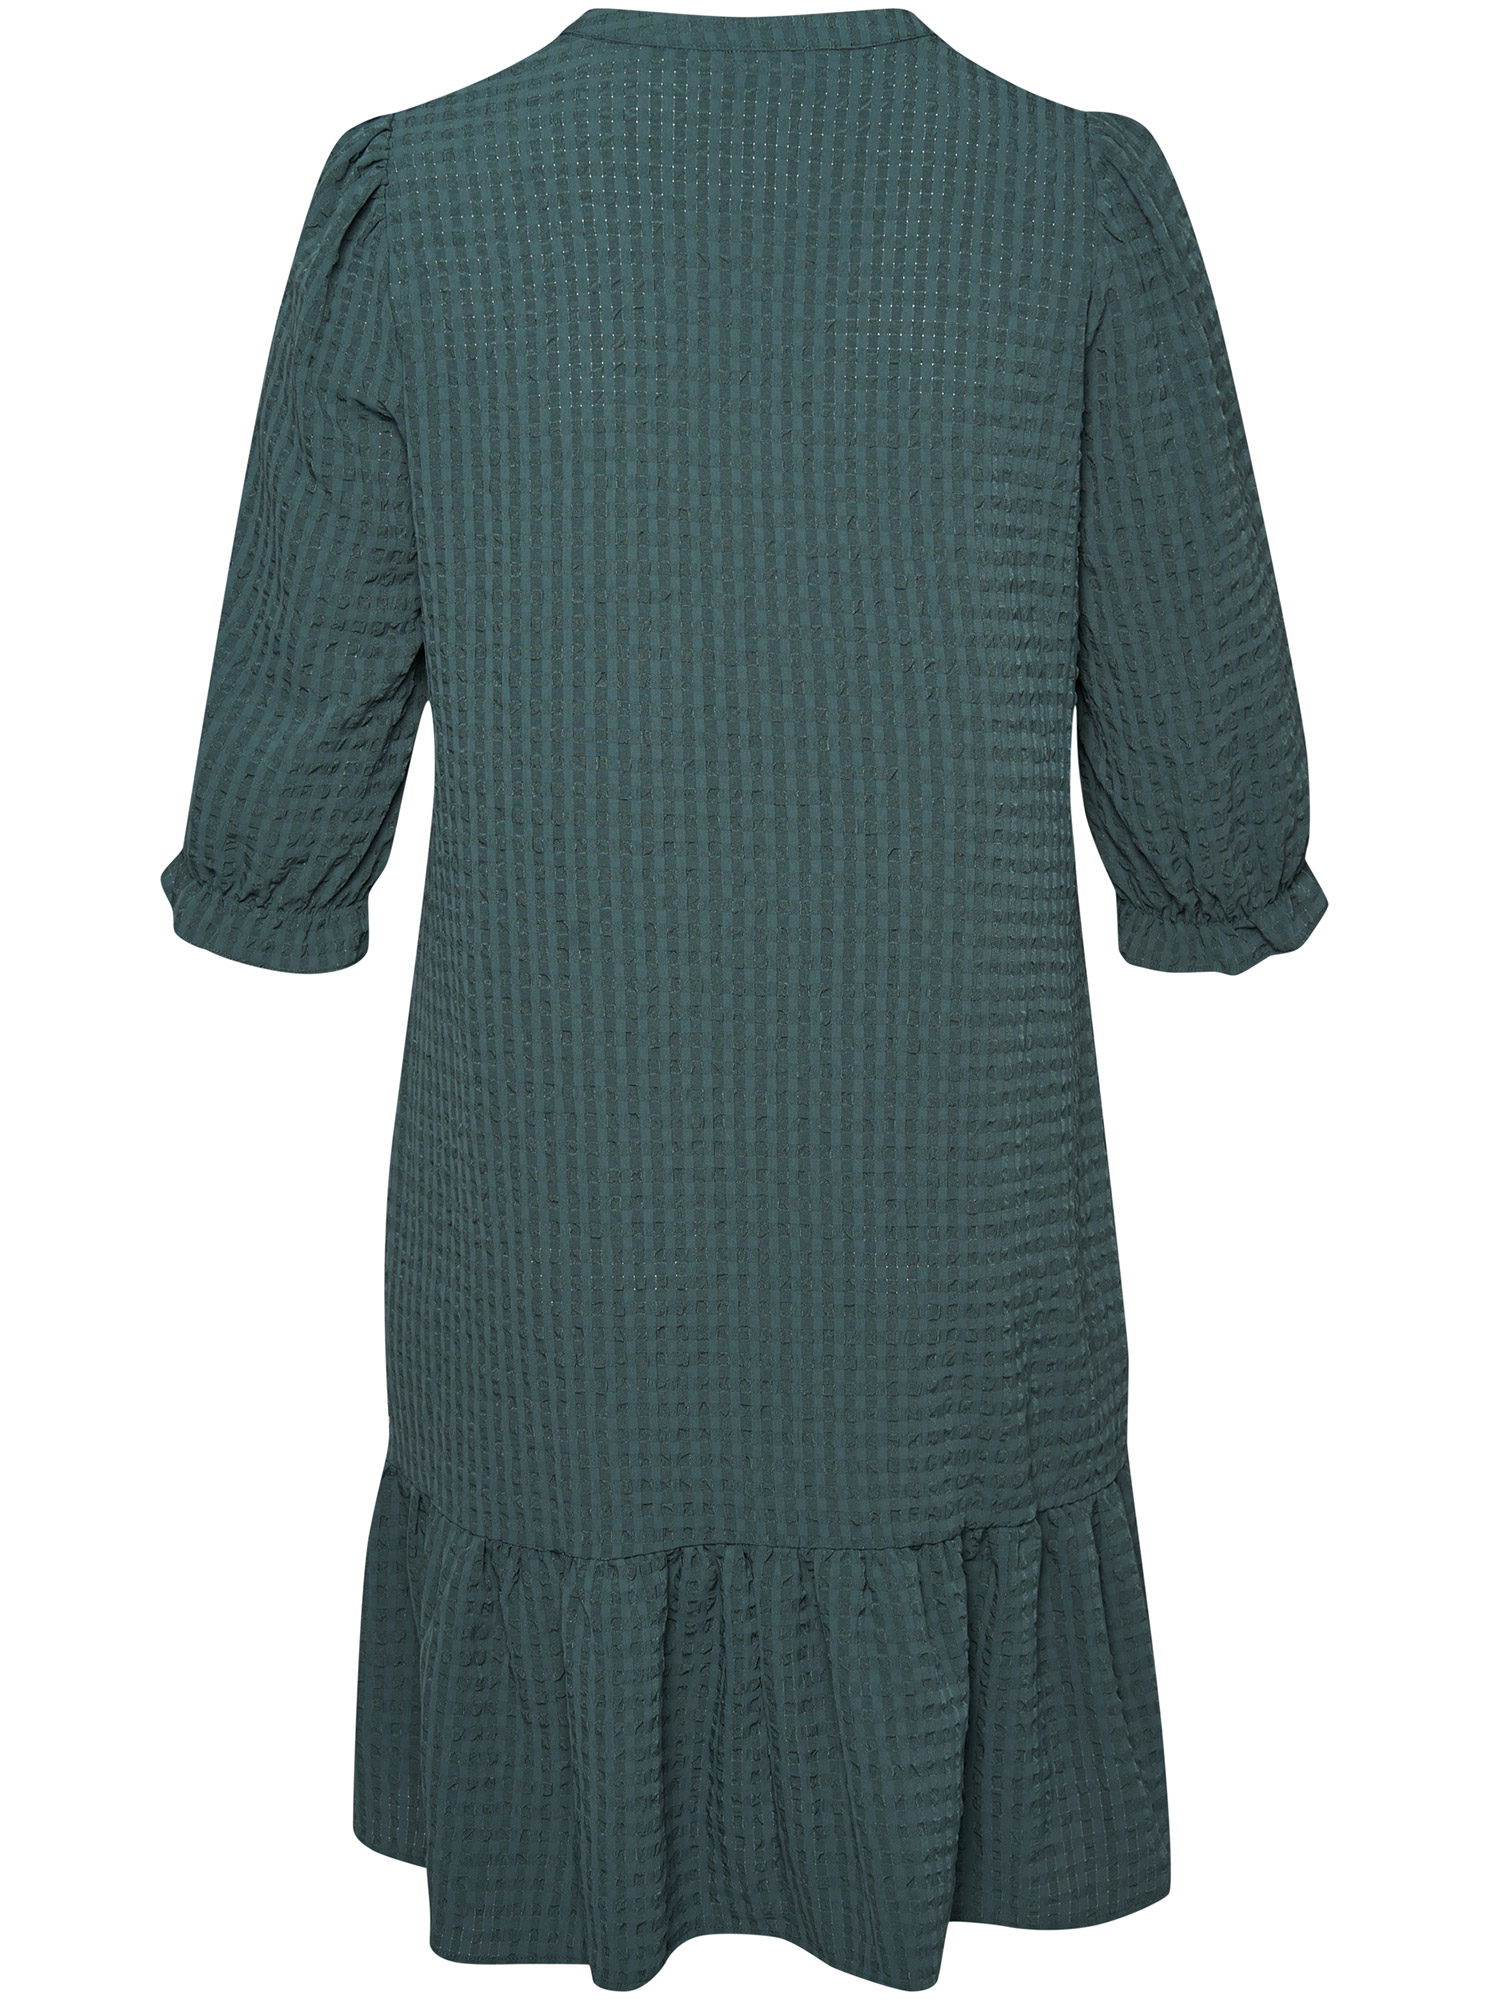 Abbeville - Grön klänning med rutor fra Aprico